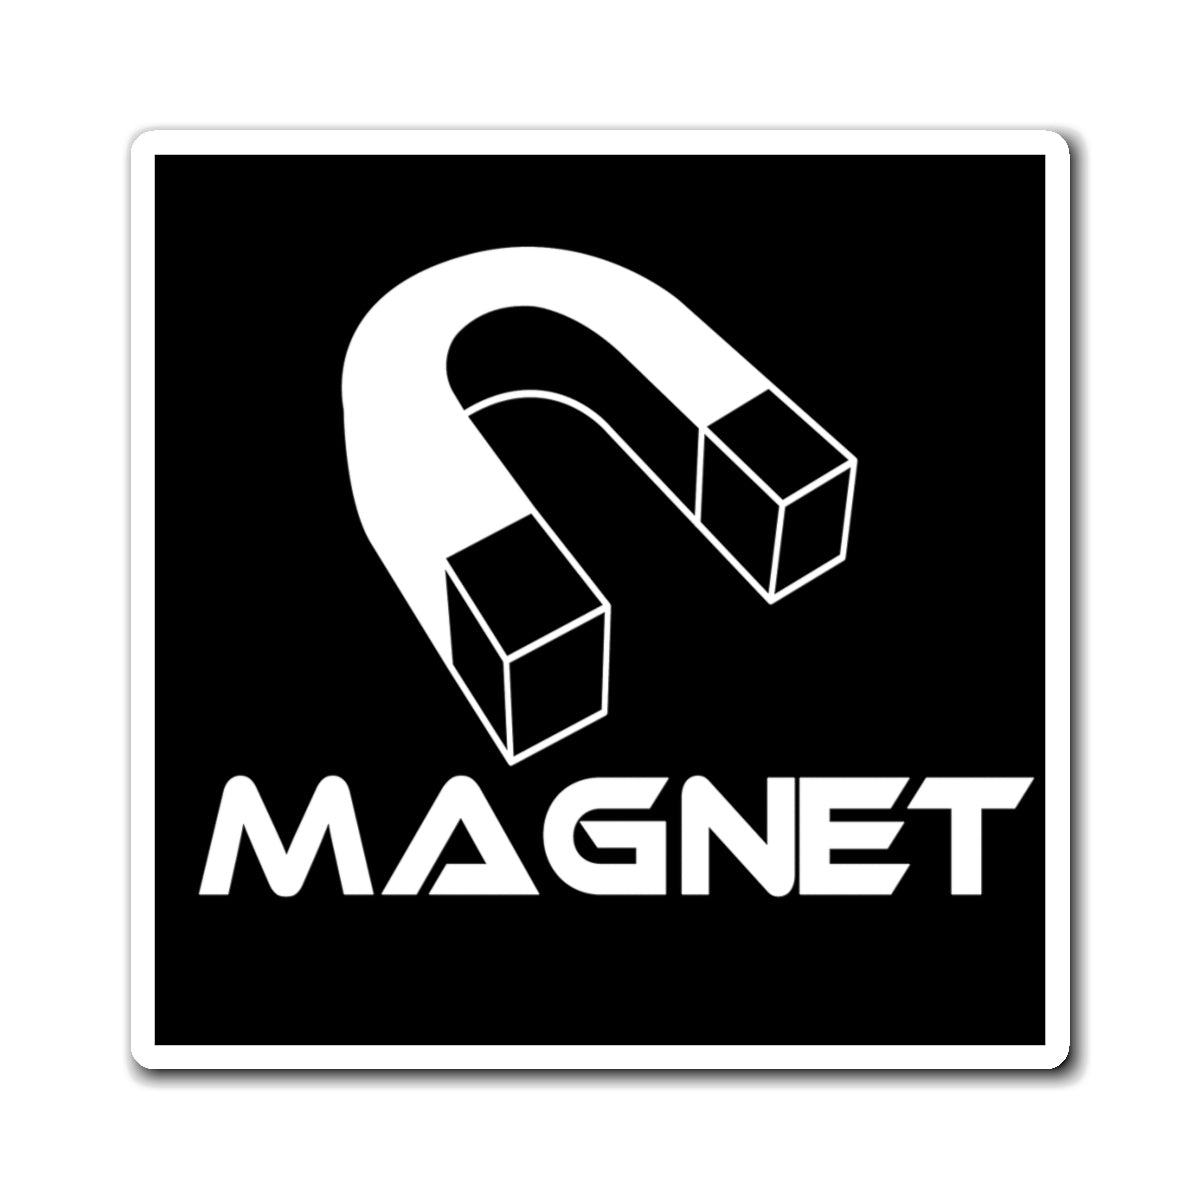 Magnet reminder magnet.